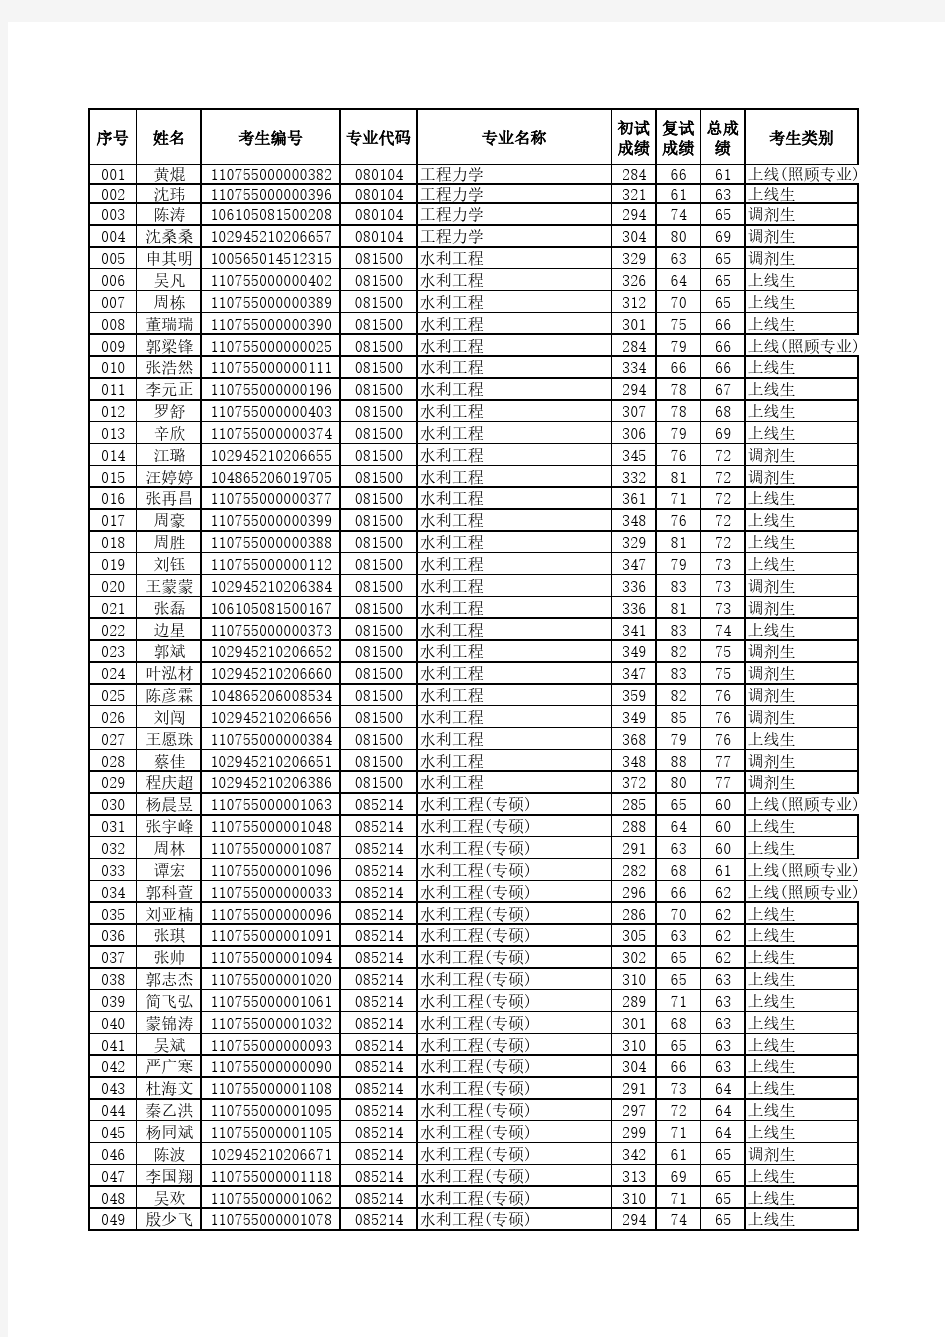 三峡大学2015级研究生拟录名单(全)